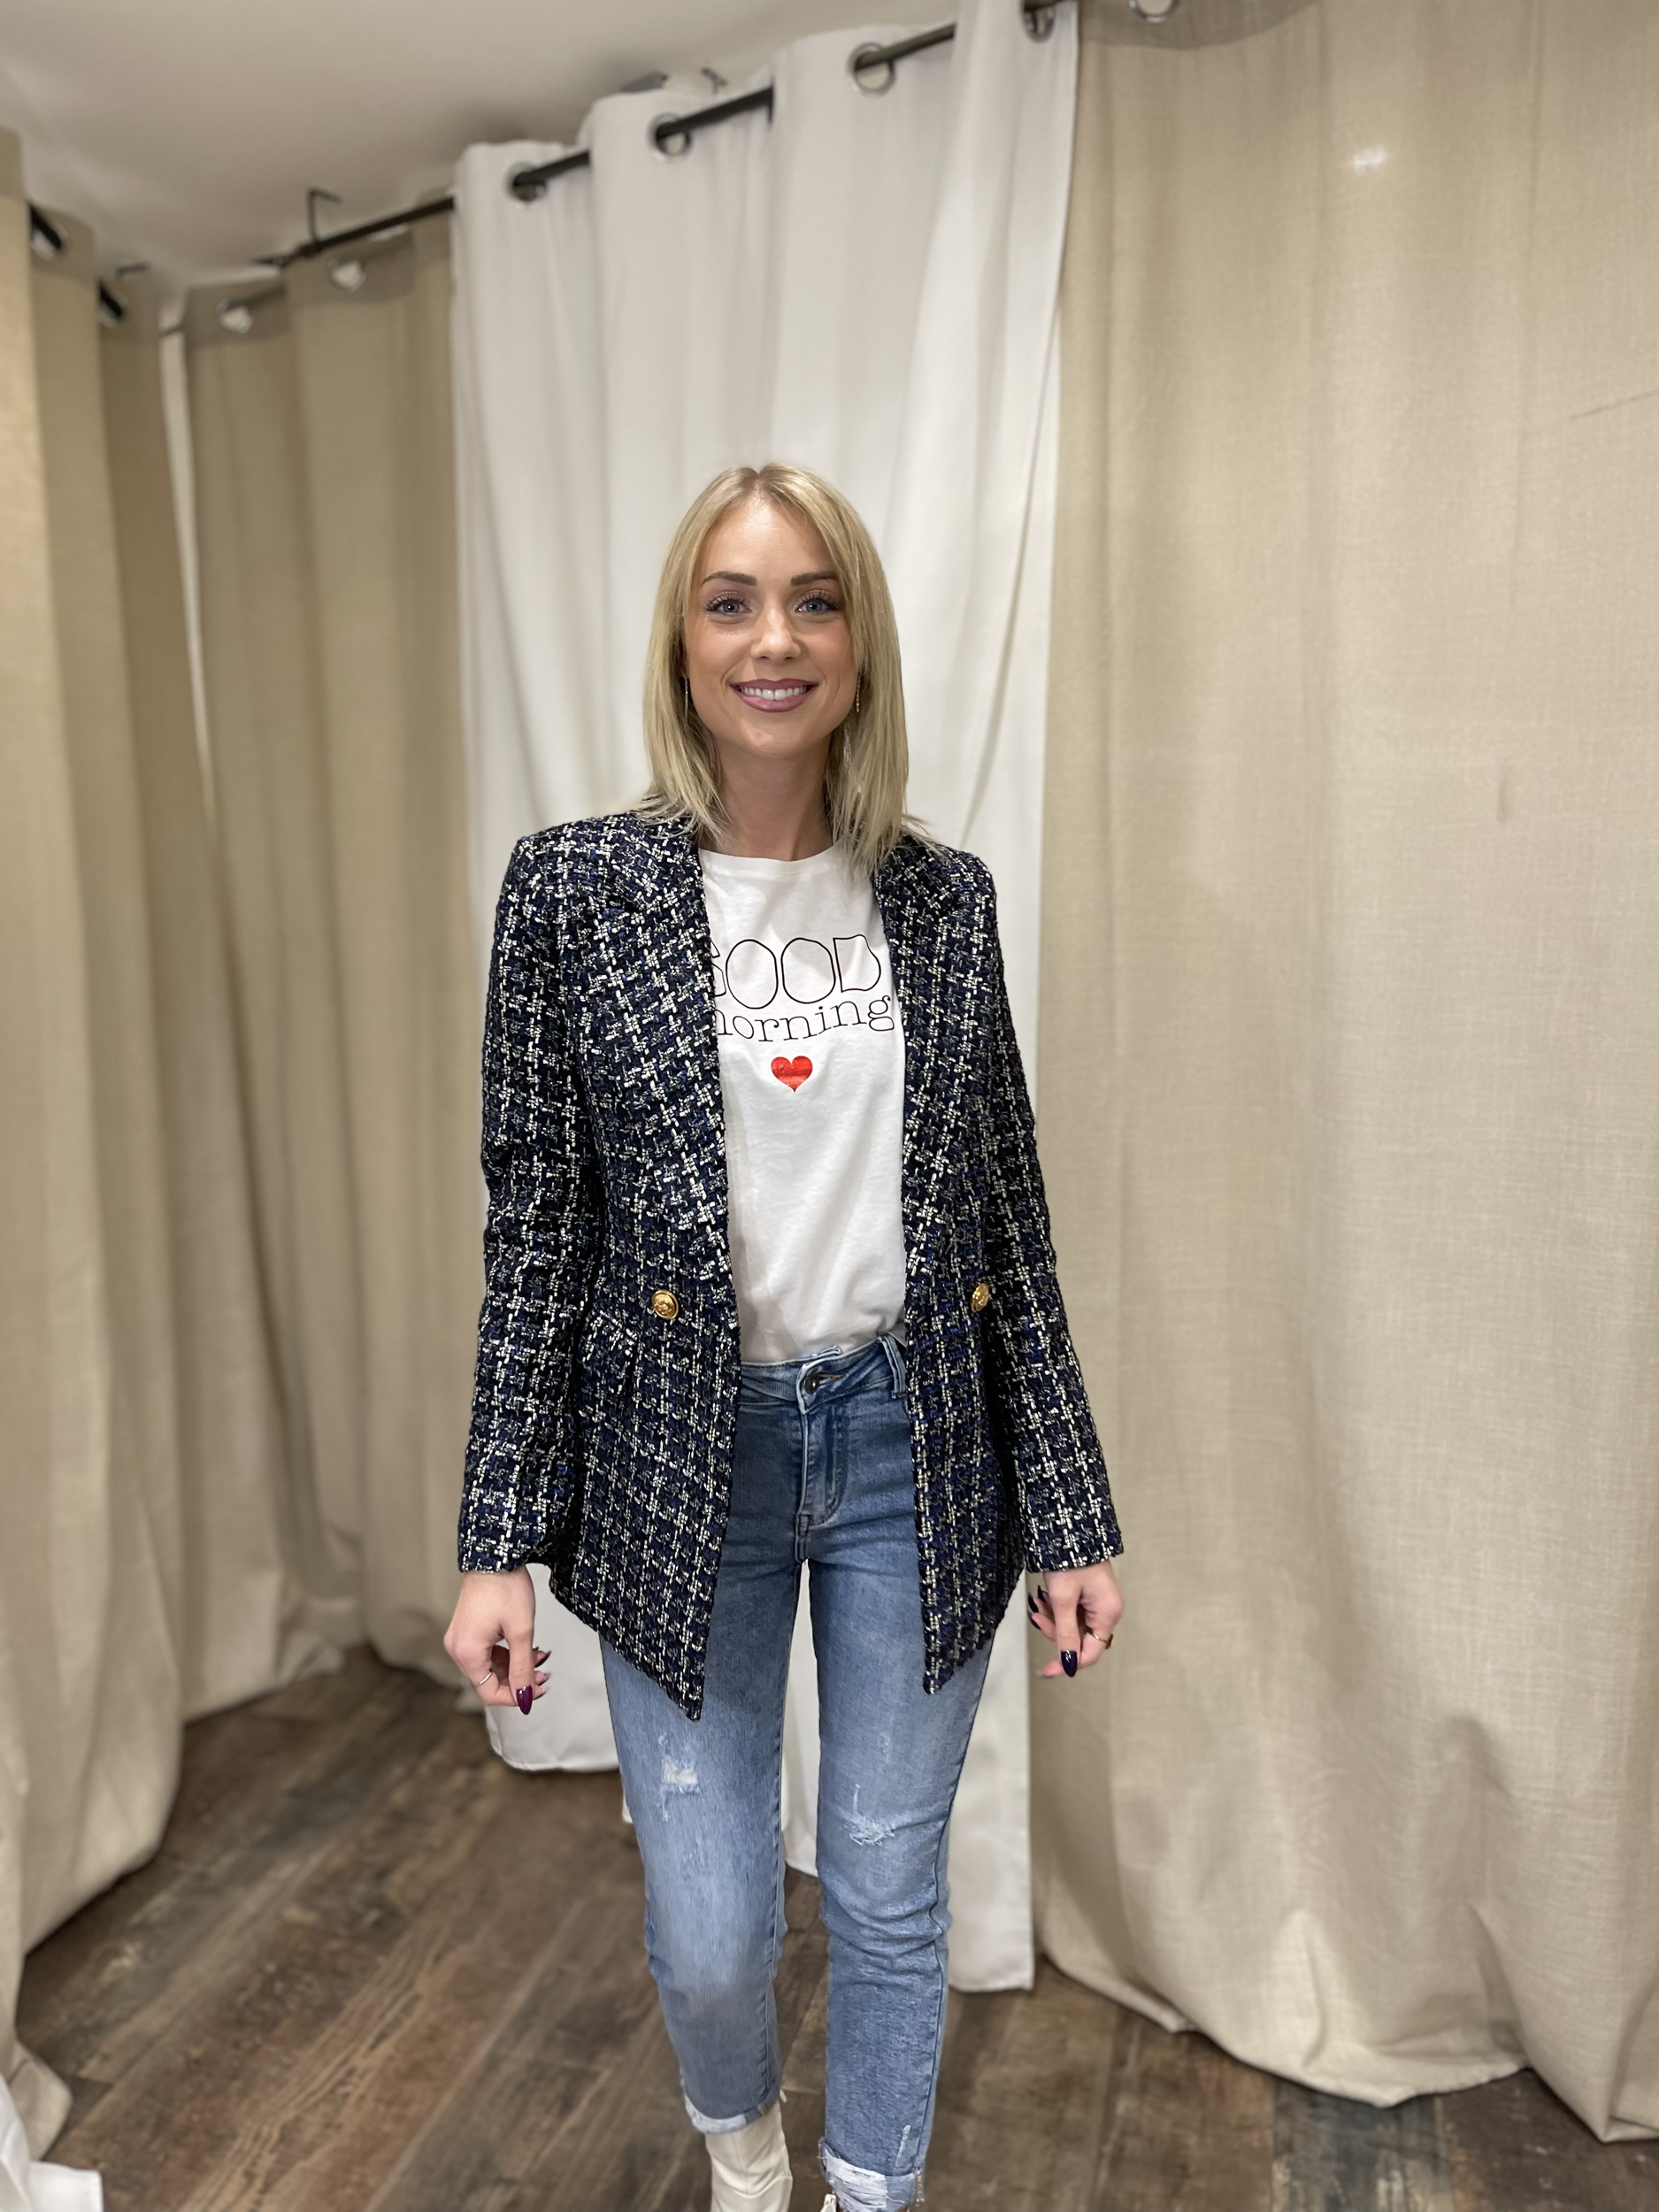 PHOTOS  Comment porter la veste en tweed avec style comme Brigitte  Macron  Gala